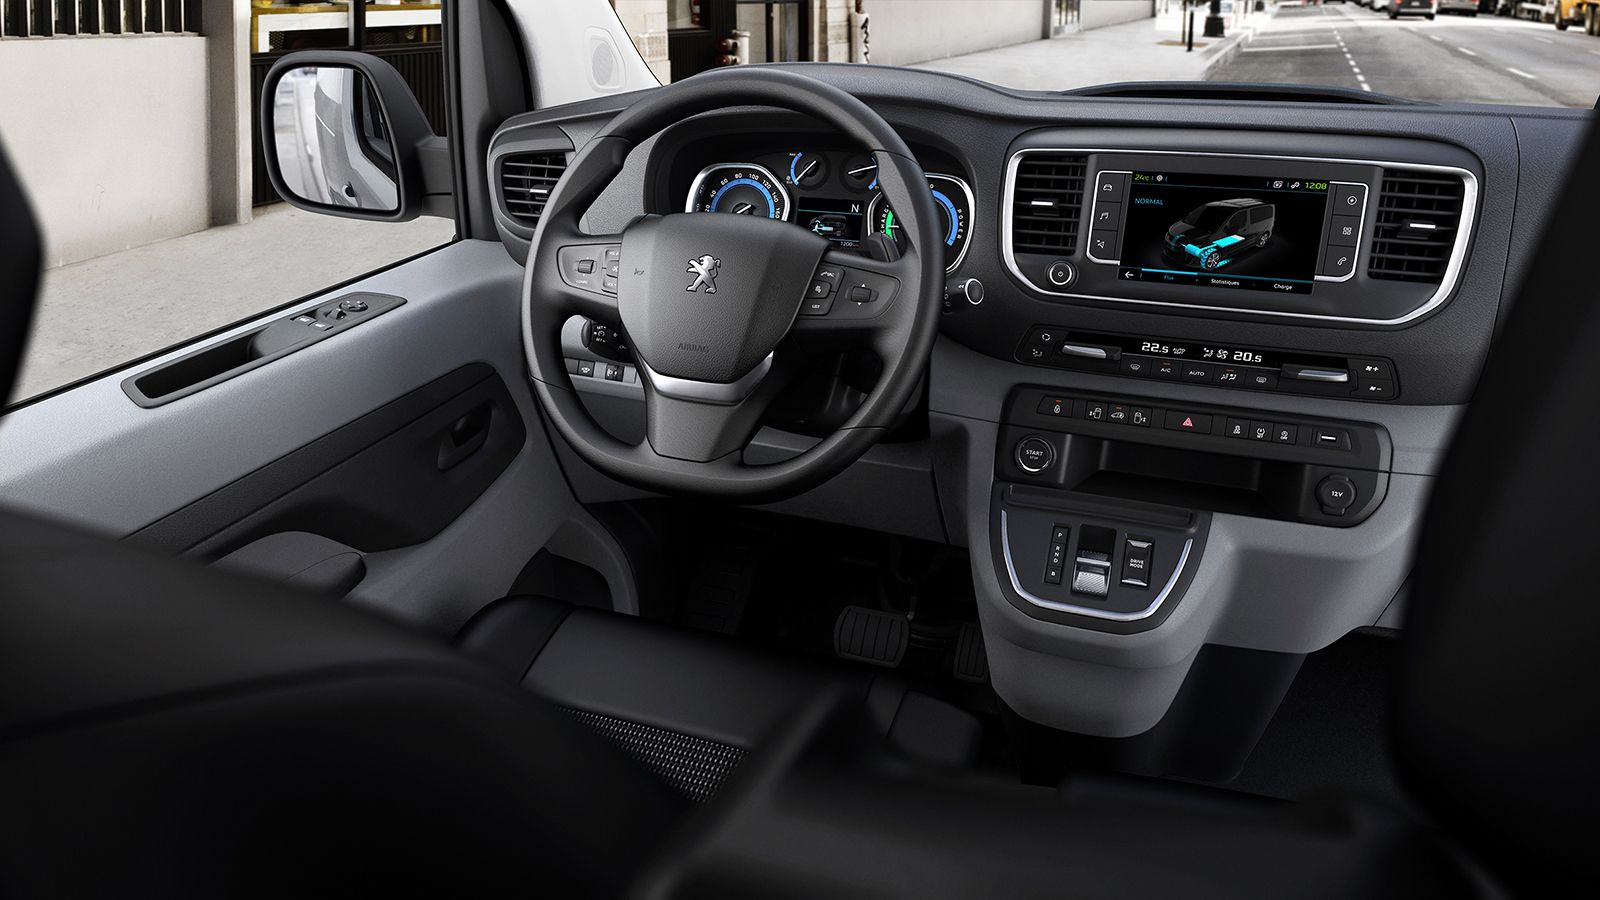 Πλήρως εξοπλισμένο και λειτουργικό το εσωτερικό του Peugeot e-Expert.